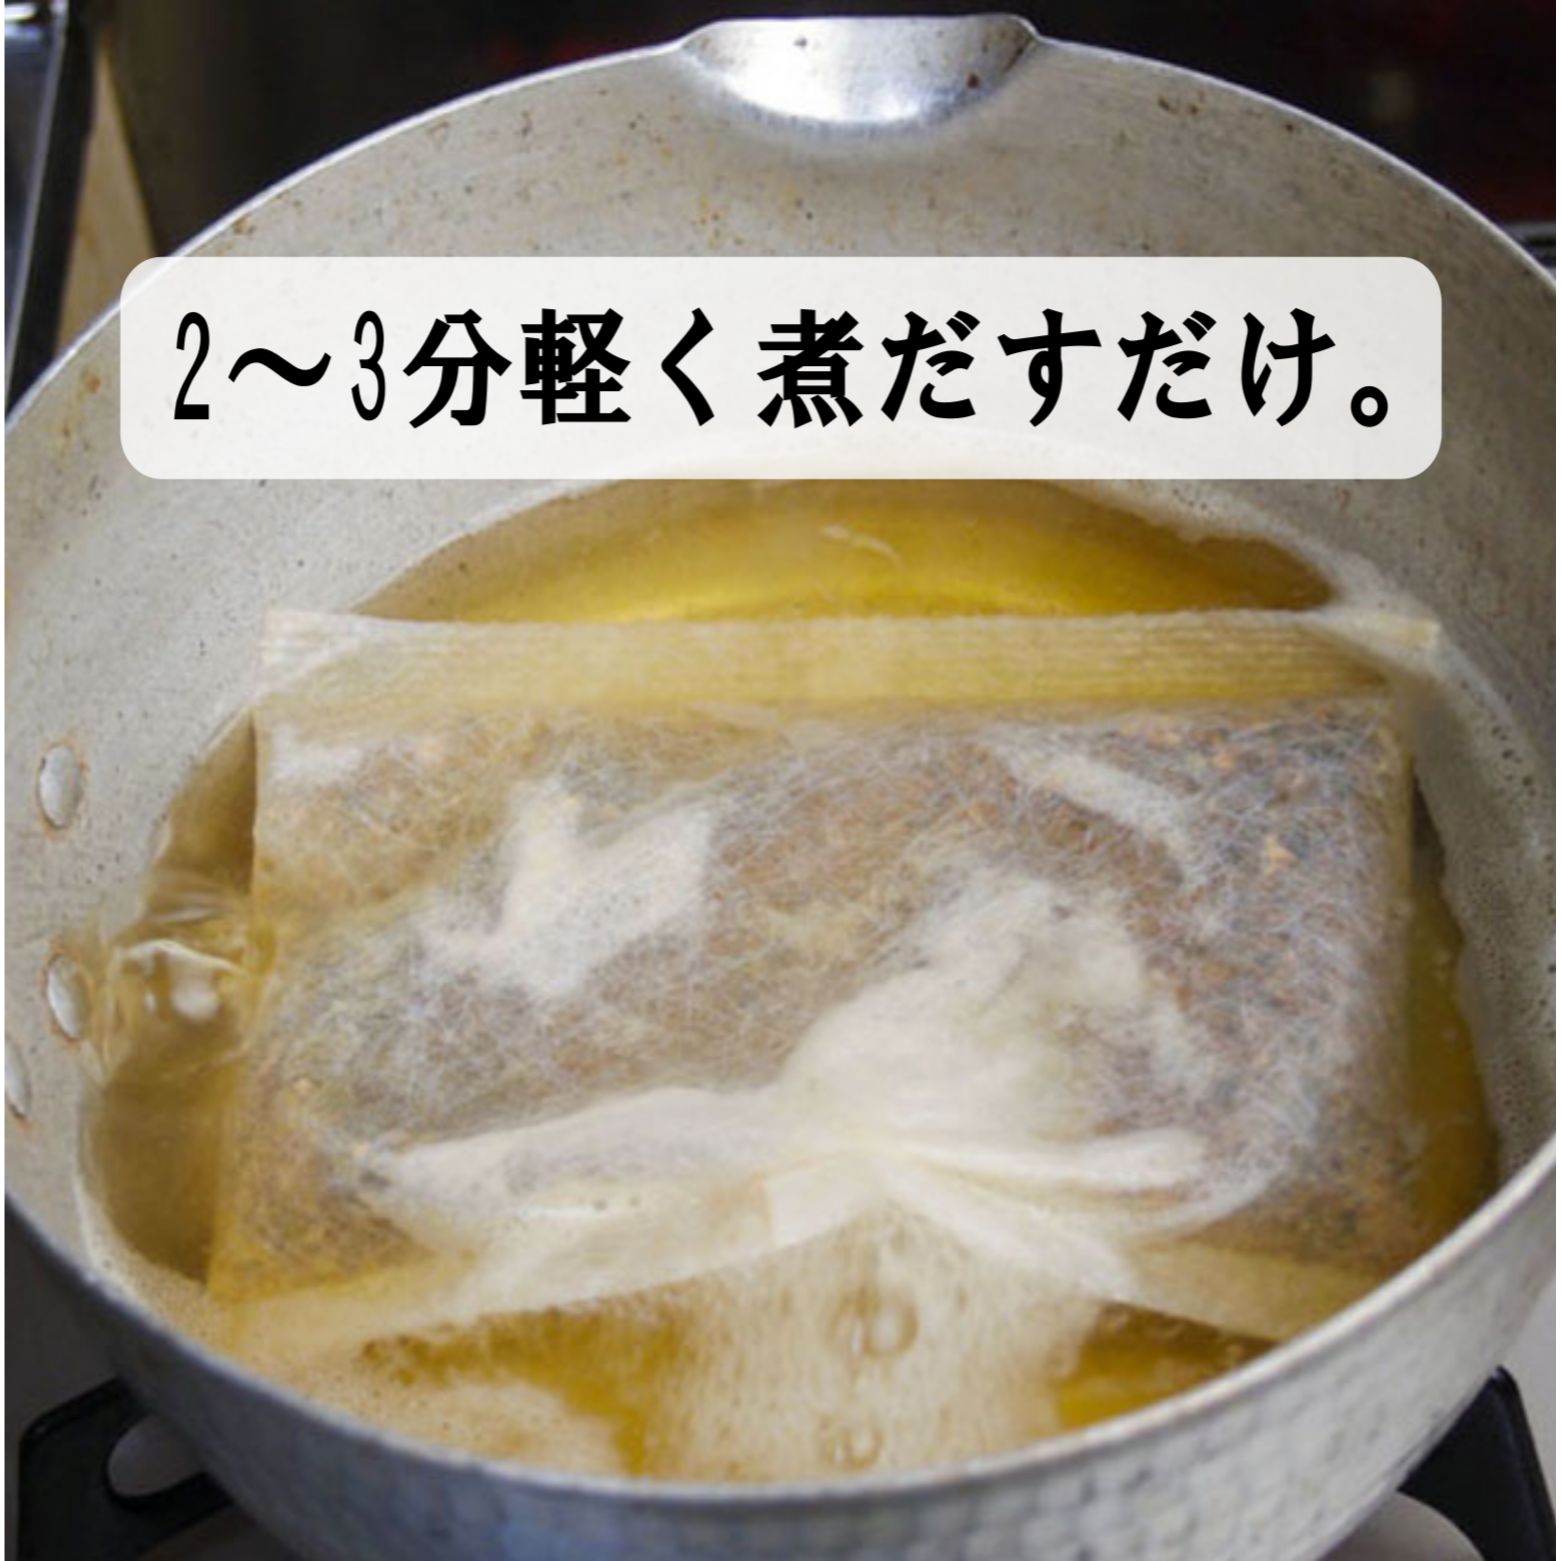 内祝 お返し 引出物に 日本の美味・和素材スープ詰合せ FBS-100 33OFF